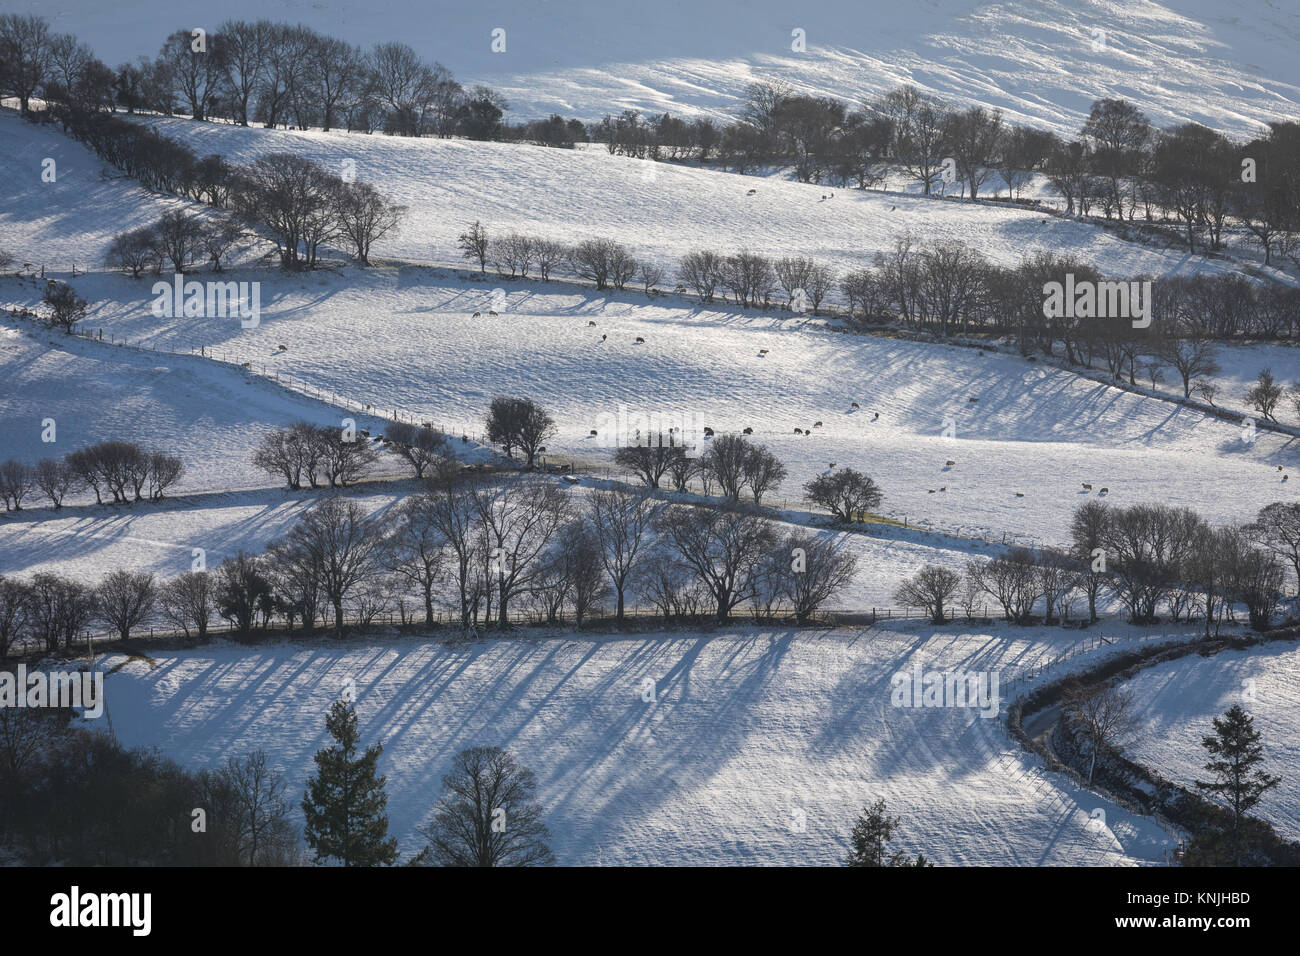 La tour de Paxton. UK. 11 Décembre, 2017. Stark arbres dans un paysage enneigé. Brecon Beacons National Park de l'Ouest, le Pays de Galles a appelé crédit : Buckley/Alamy Live News Banque D'Images